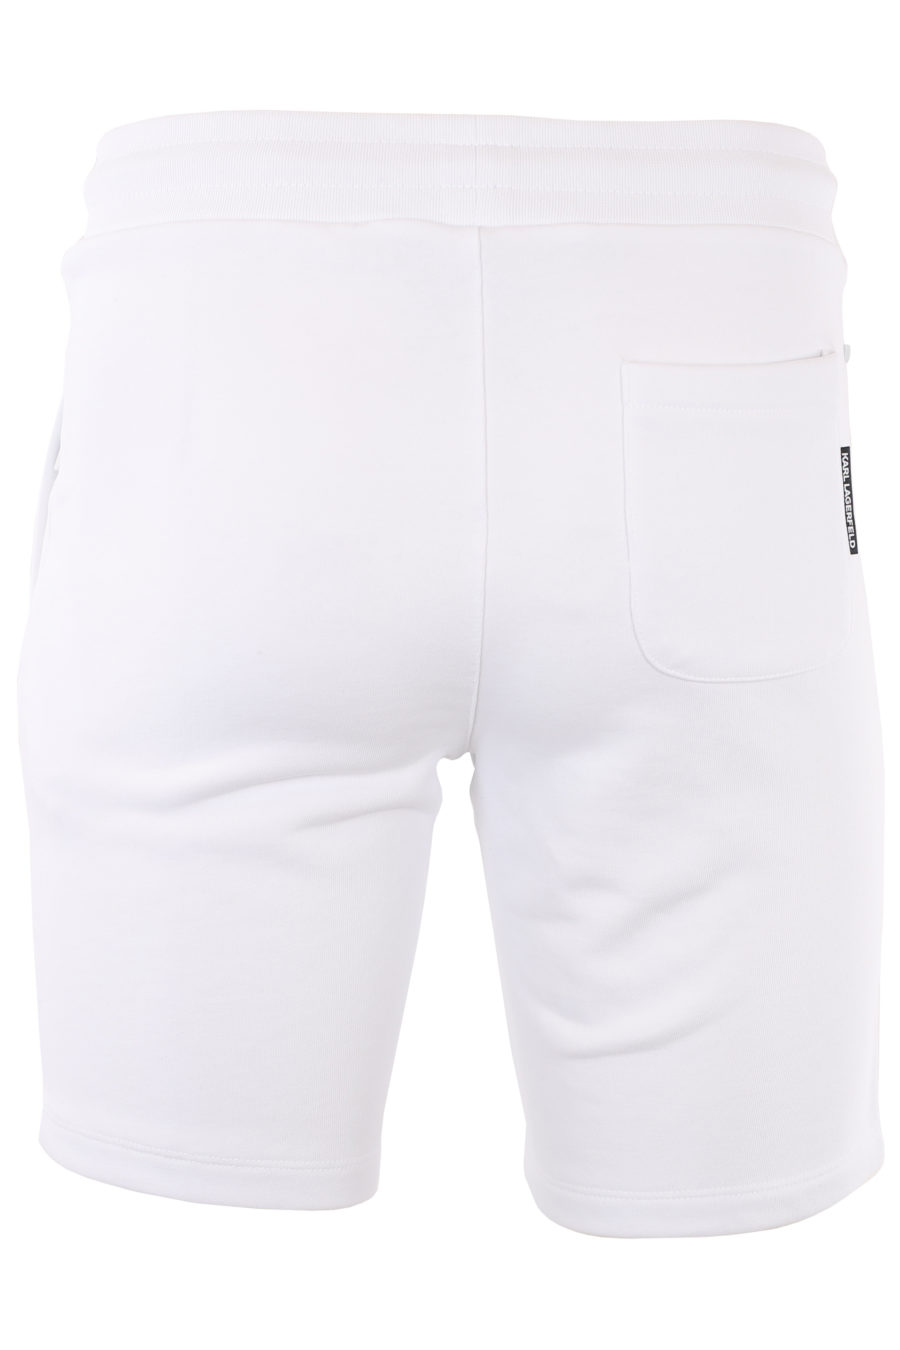 Pantalón corto blanco con logo de goma - IMG 1016